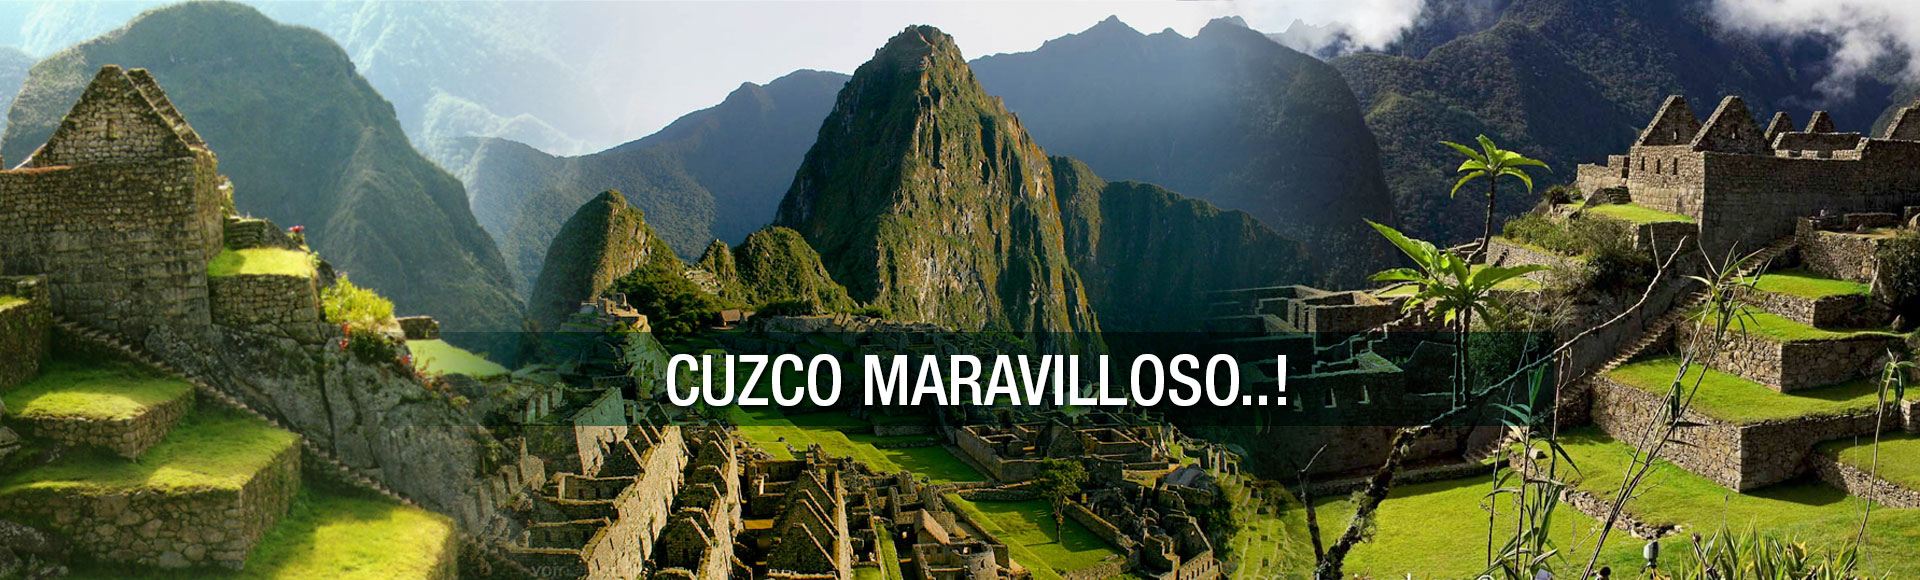 Cuzco Maravilloso